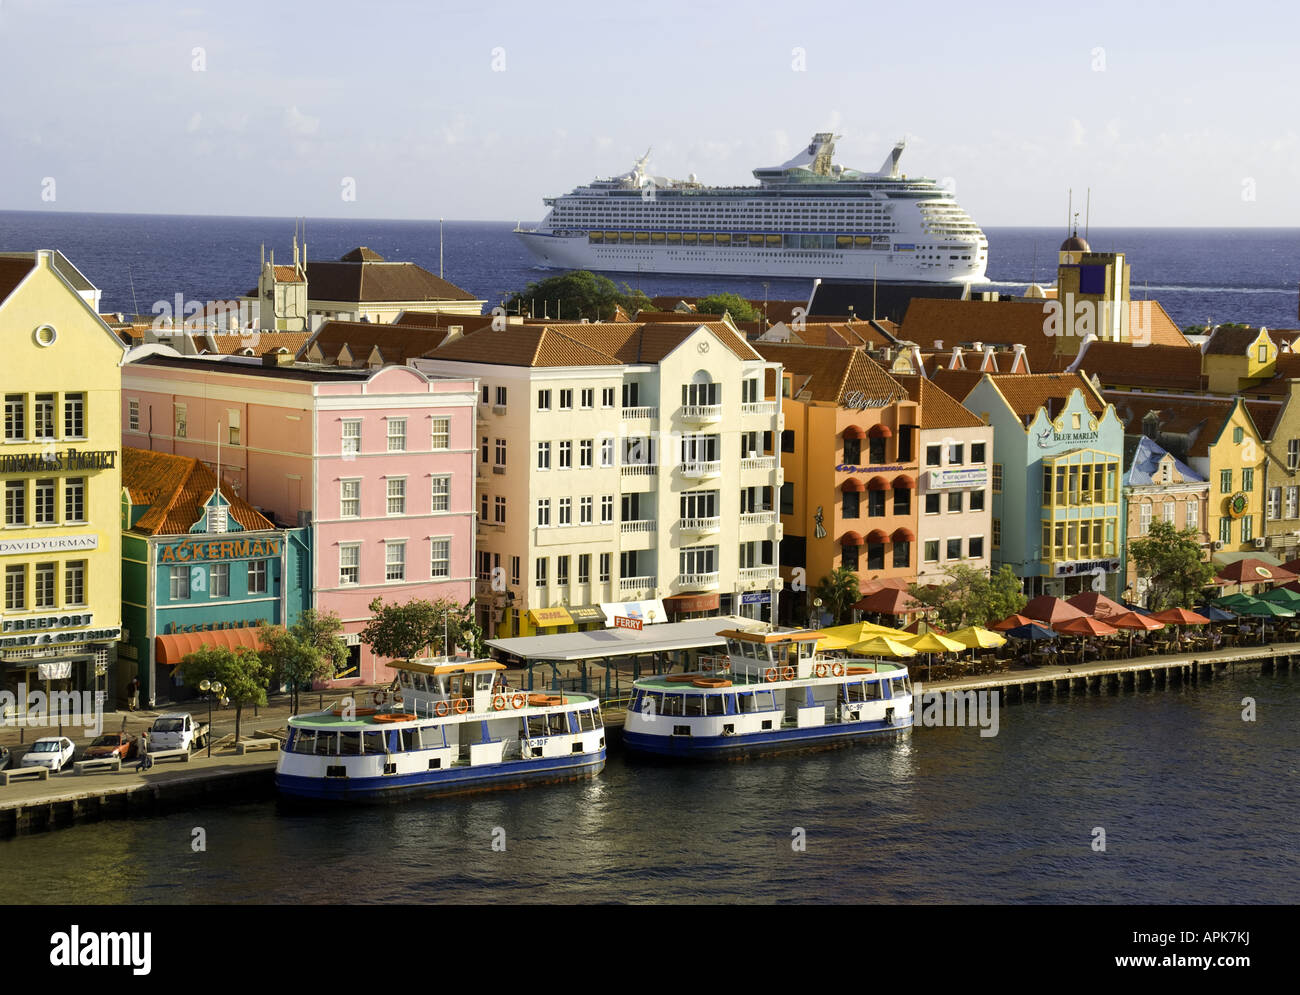 Willemstad est au bord de l'architecture néerlandaise Punda pastel avec bateau de croisière Royal Caribbean Adventure of the Seas départ du port Banque D'Images